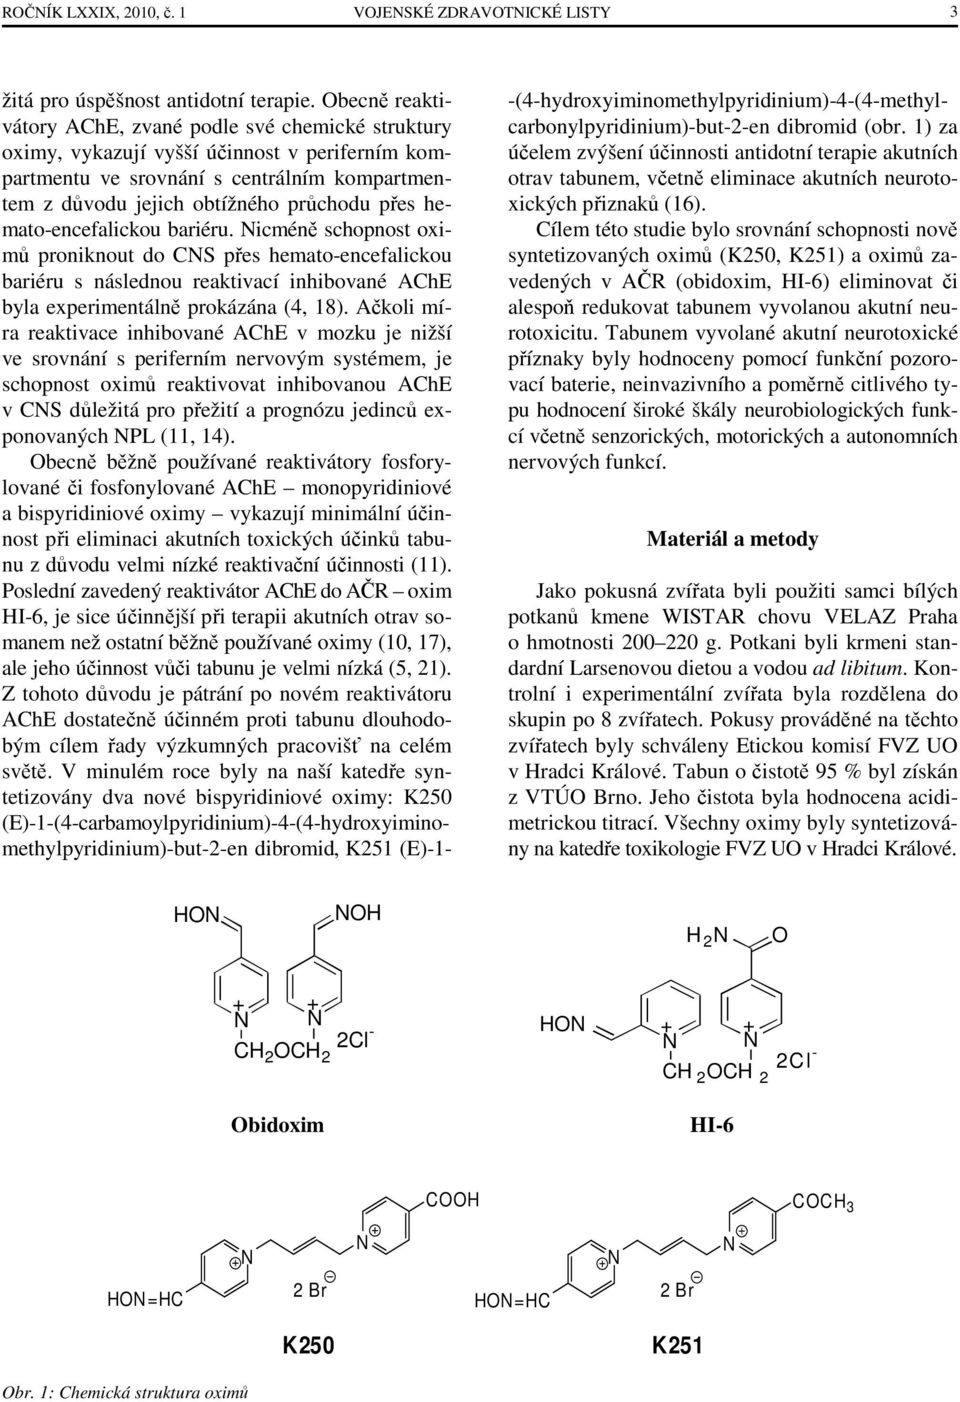 hemato-encefalickou bariéru. Nicméně schopnost oximů proniknout do CNS přes hemato-encefalickou bariéru s následnou reaktivací inhibované AChE byla experimentálně prokázána (4, 18).